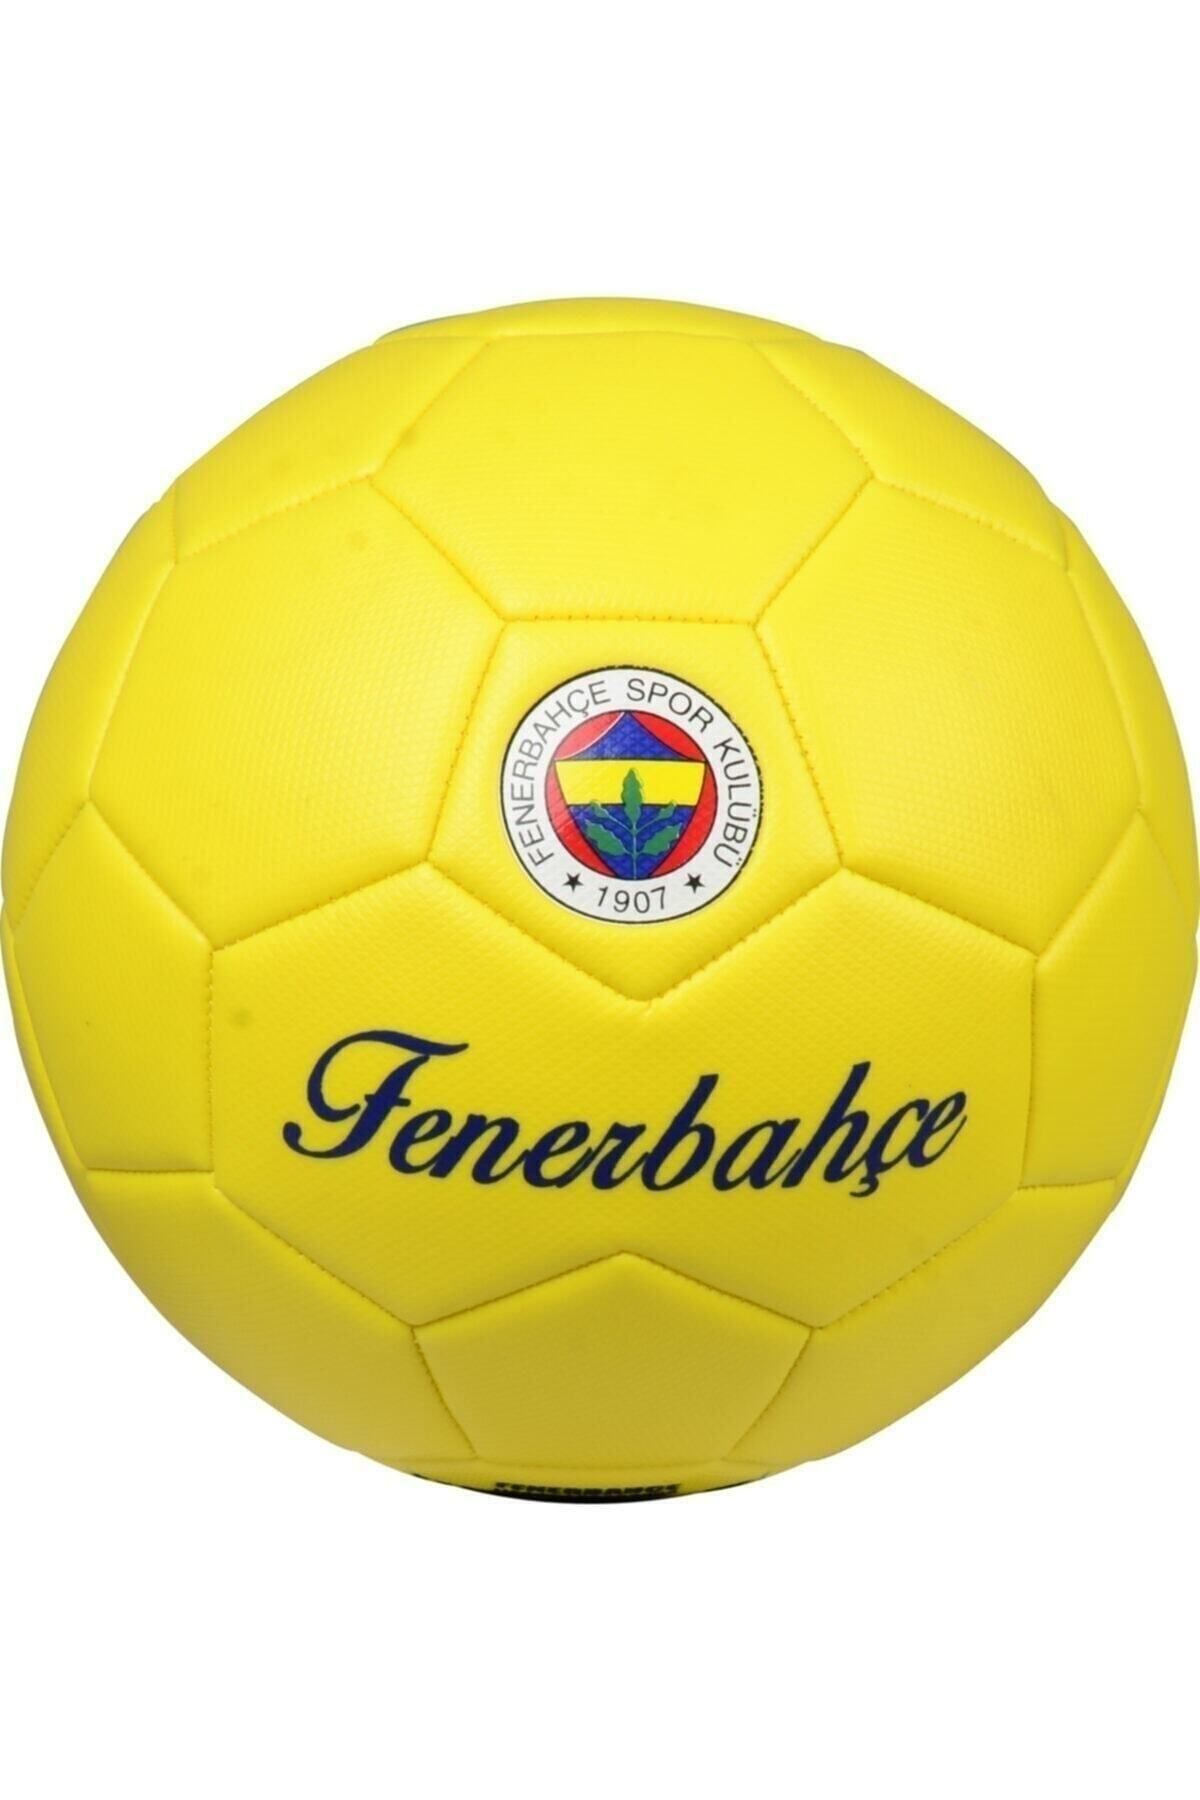 woodhub Fenerbahçe Lisanslı Futbol Topu - Sarı